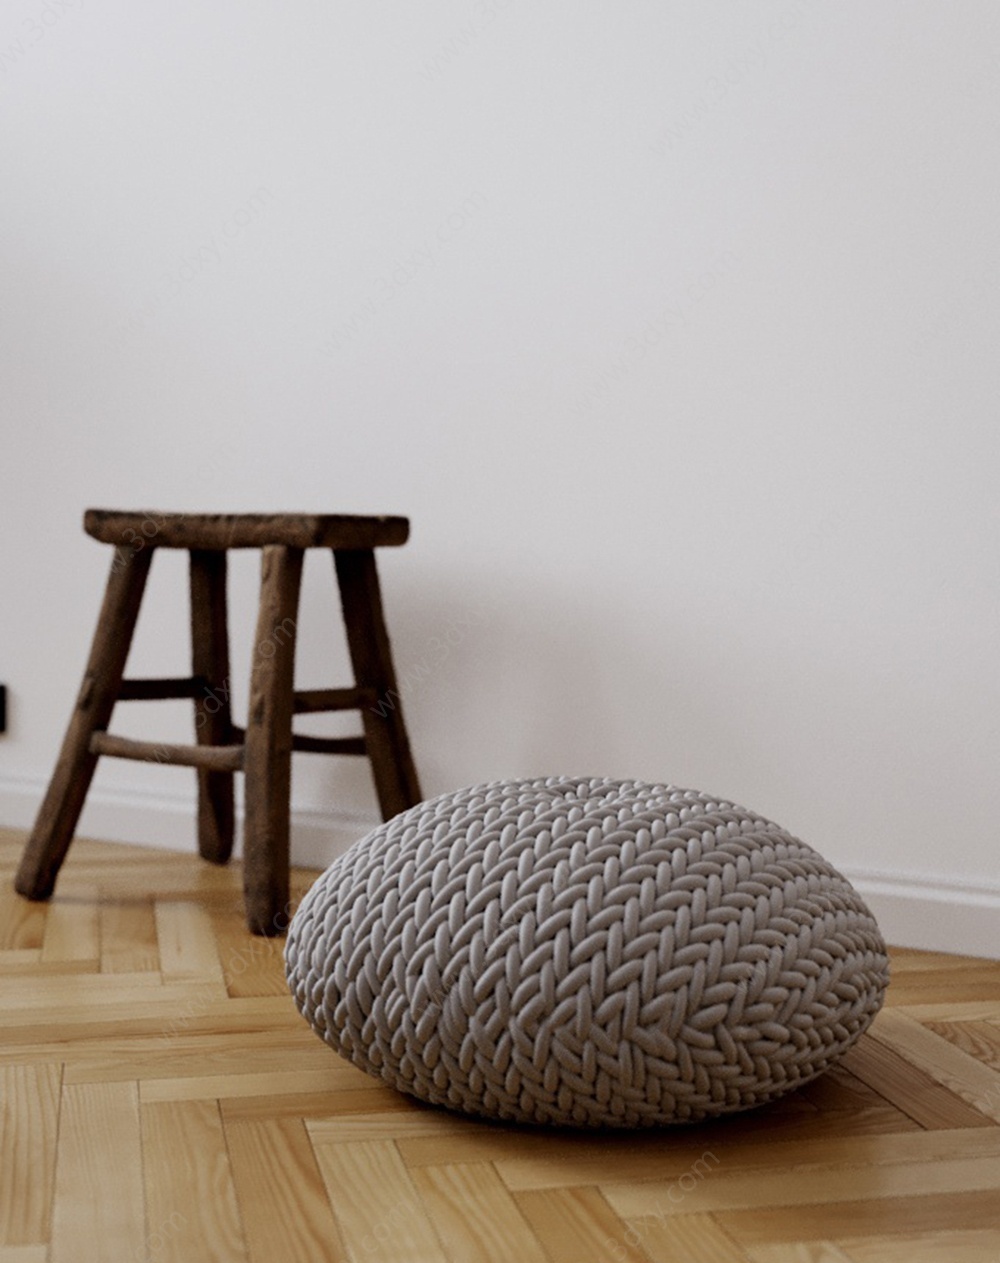 座垫和木凳3D模型